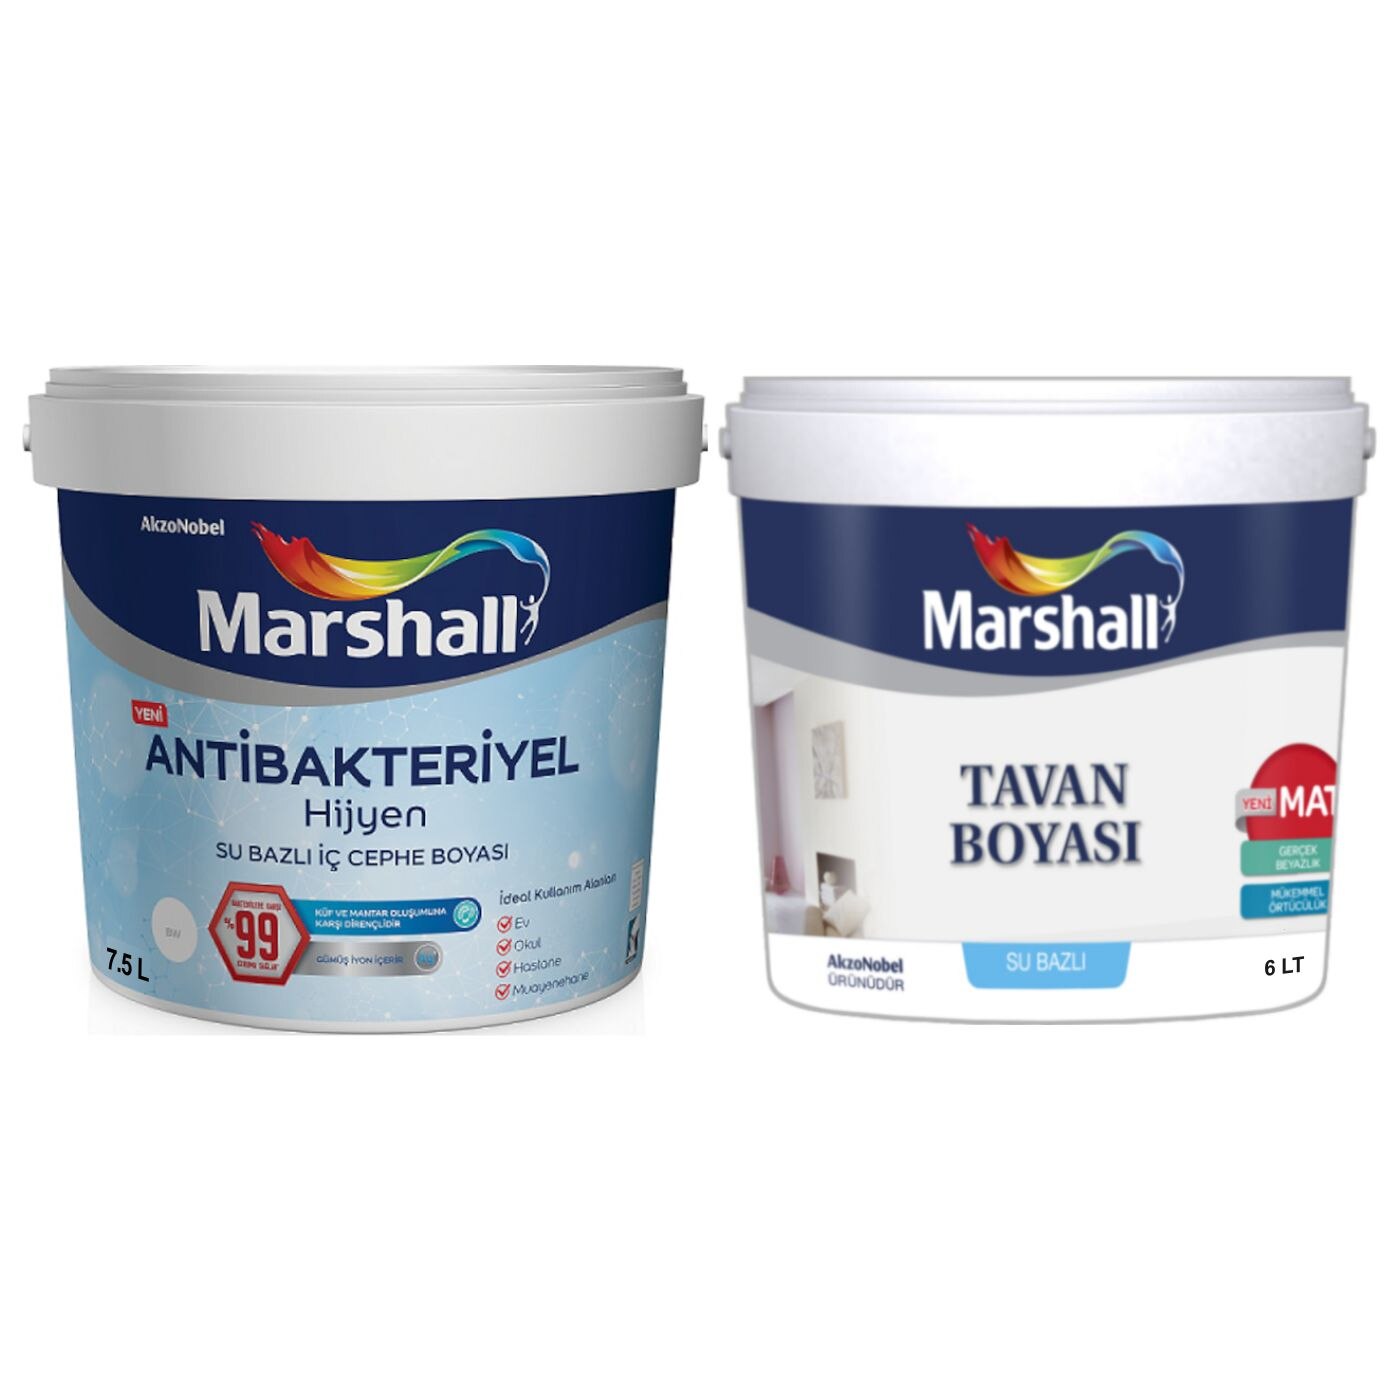 Marshall Antibakteriyel Hijyen Iç Cephe Boyası 7.5Lt=10Kg+Marshal (278648823)